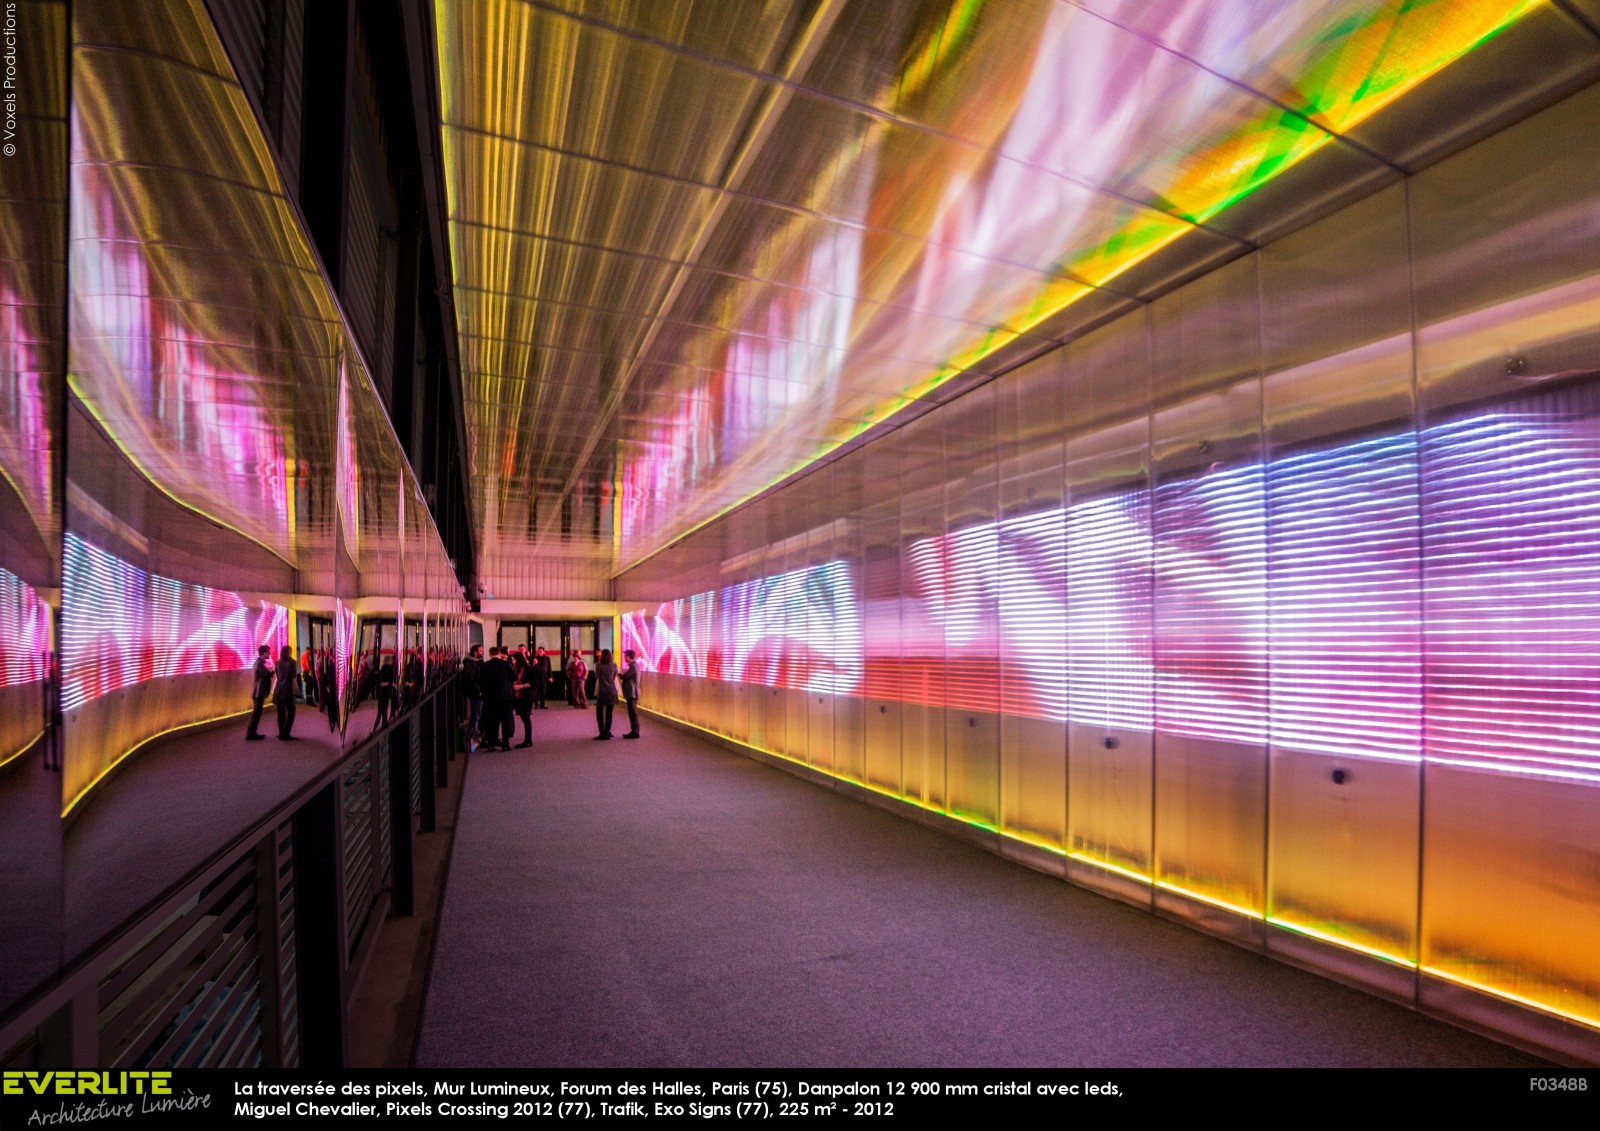 La traversée des pixels, mur lumineux au forum des Halles à ... Image 2